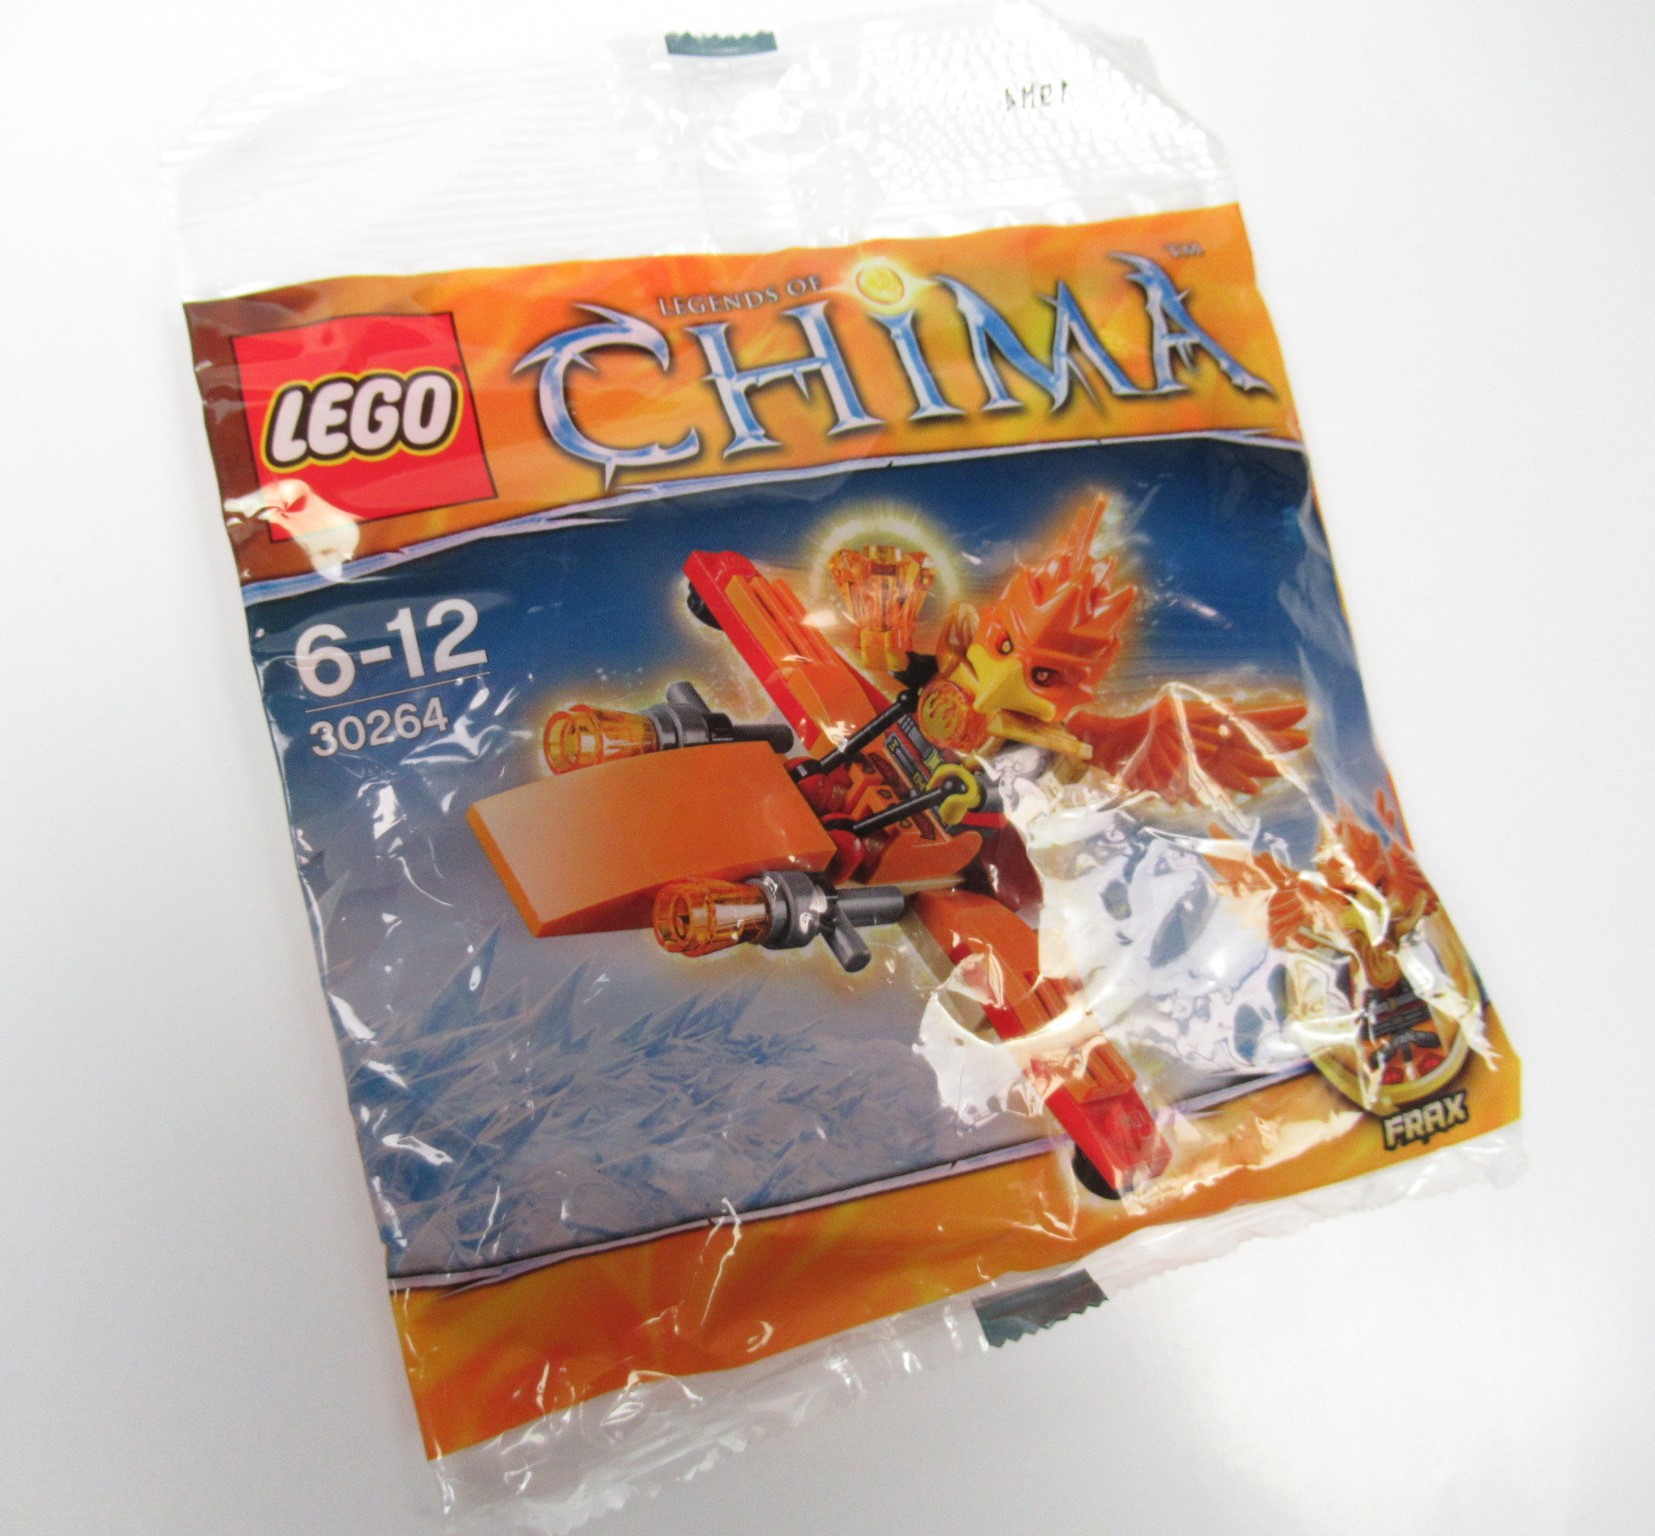 Resmi LEGO ® Legends Of Chima 30264 Frax' Phoenix-Flieger Polybag